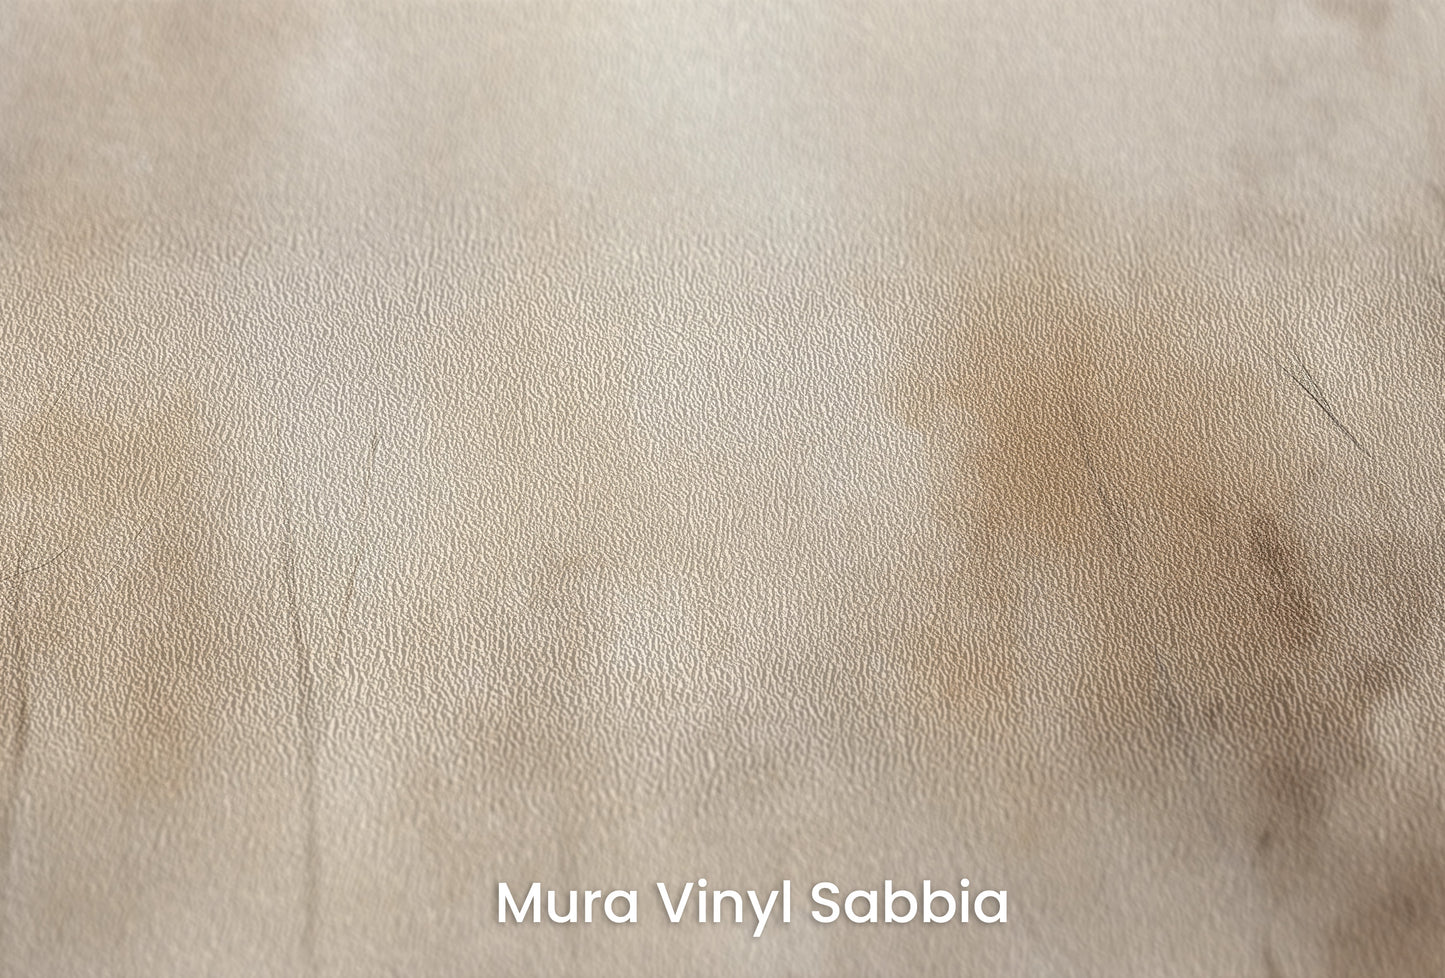 Zbliżenie na artystyczną fototapetę o nazwie AMBER FOG FOREST MURAL na podłożu Mura Vinyl Sabbia struktura grubego ziarna piasku.